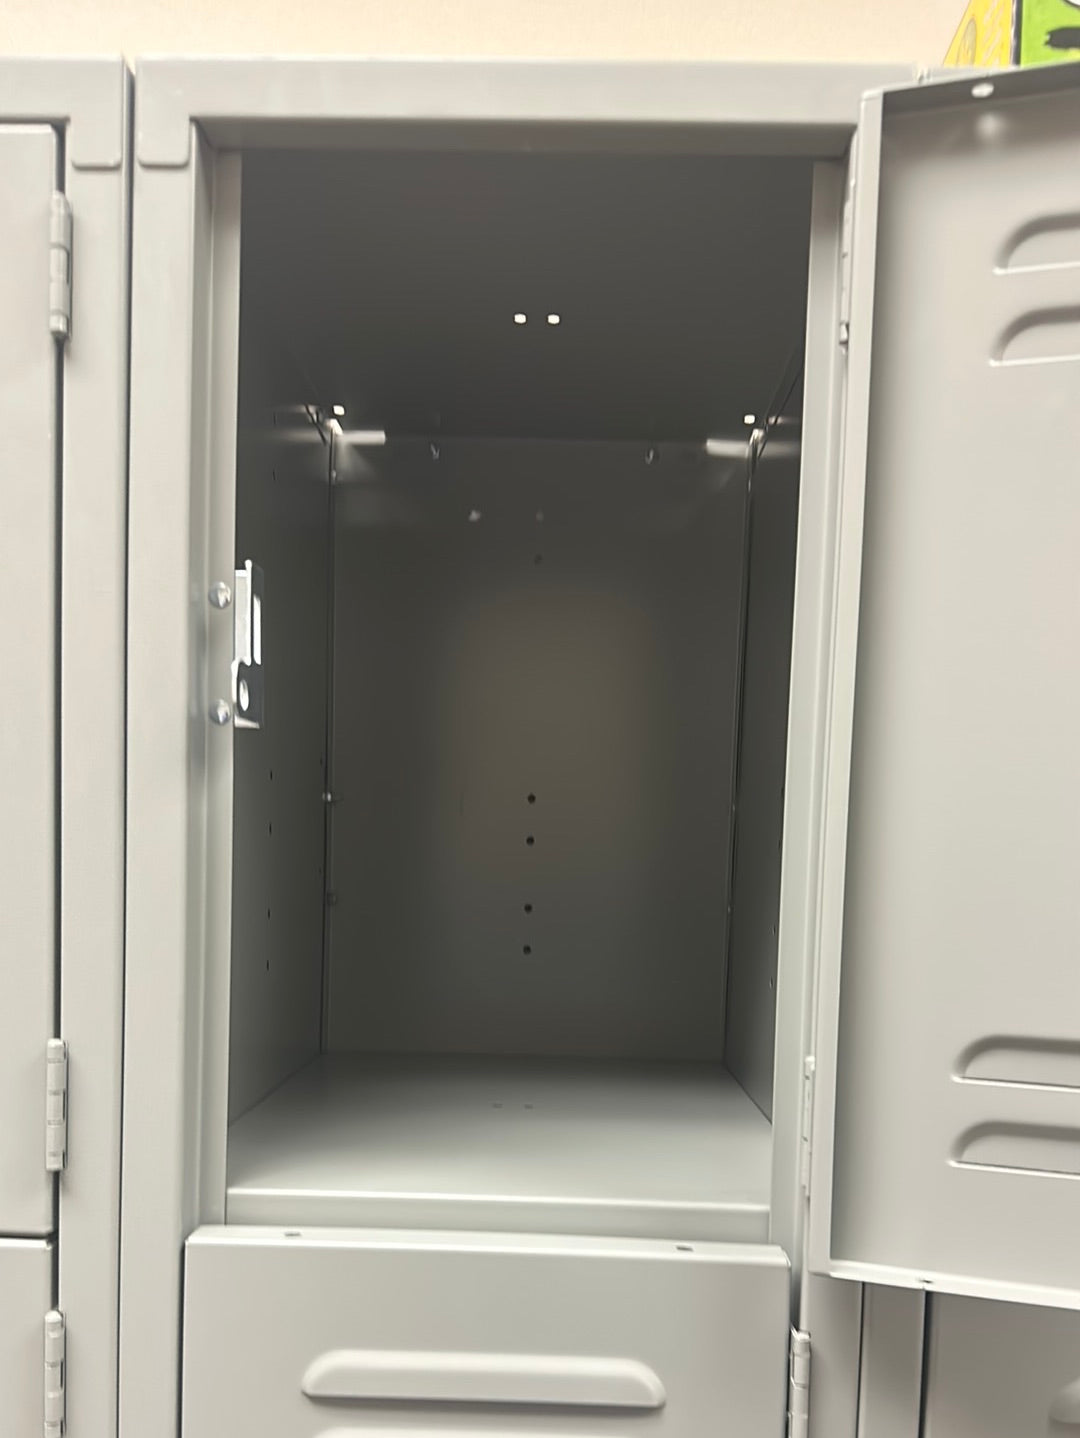 12 Door Metal Uline Lockers